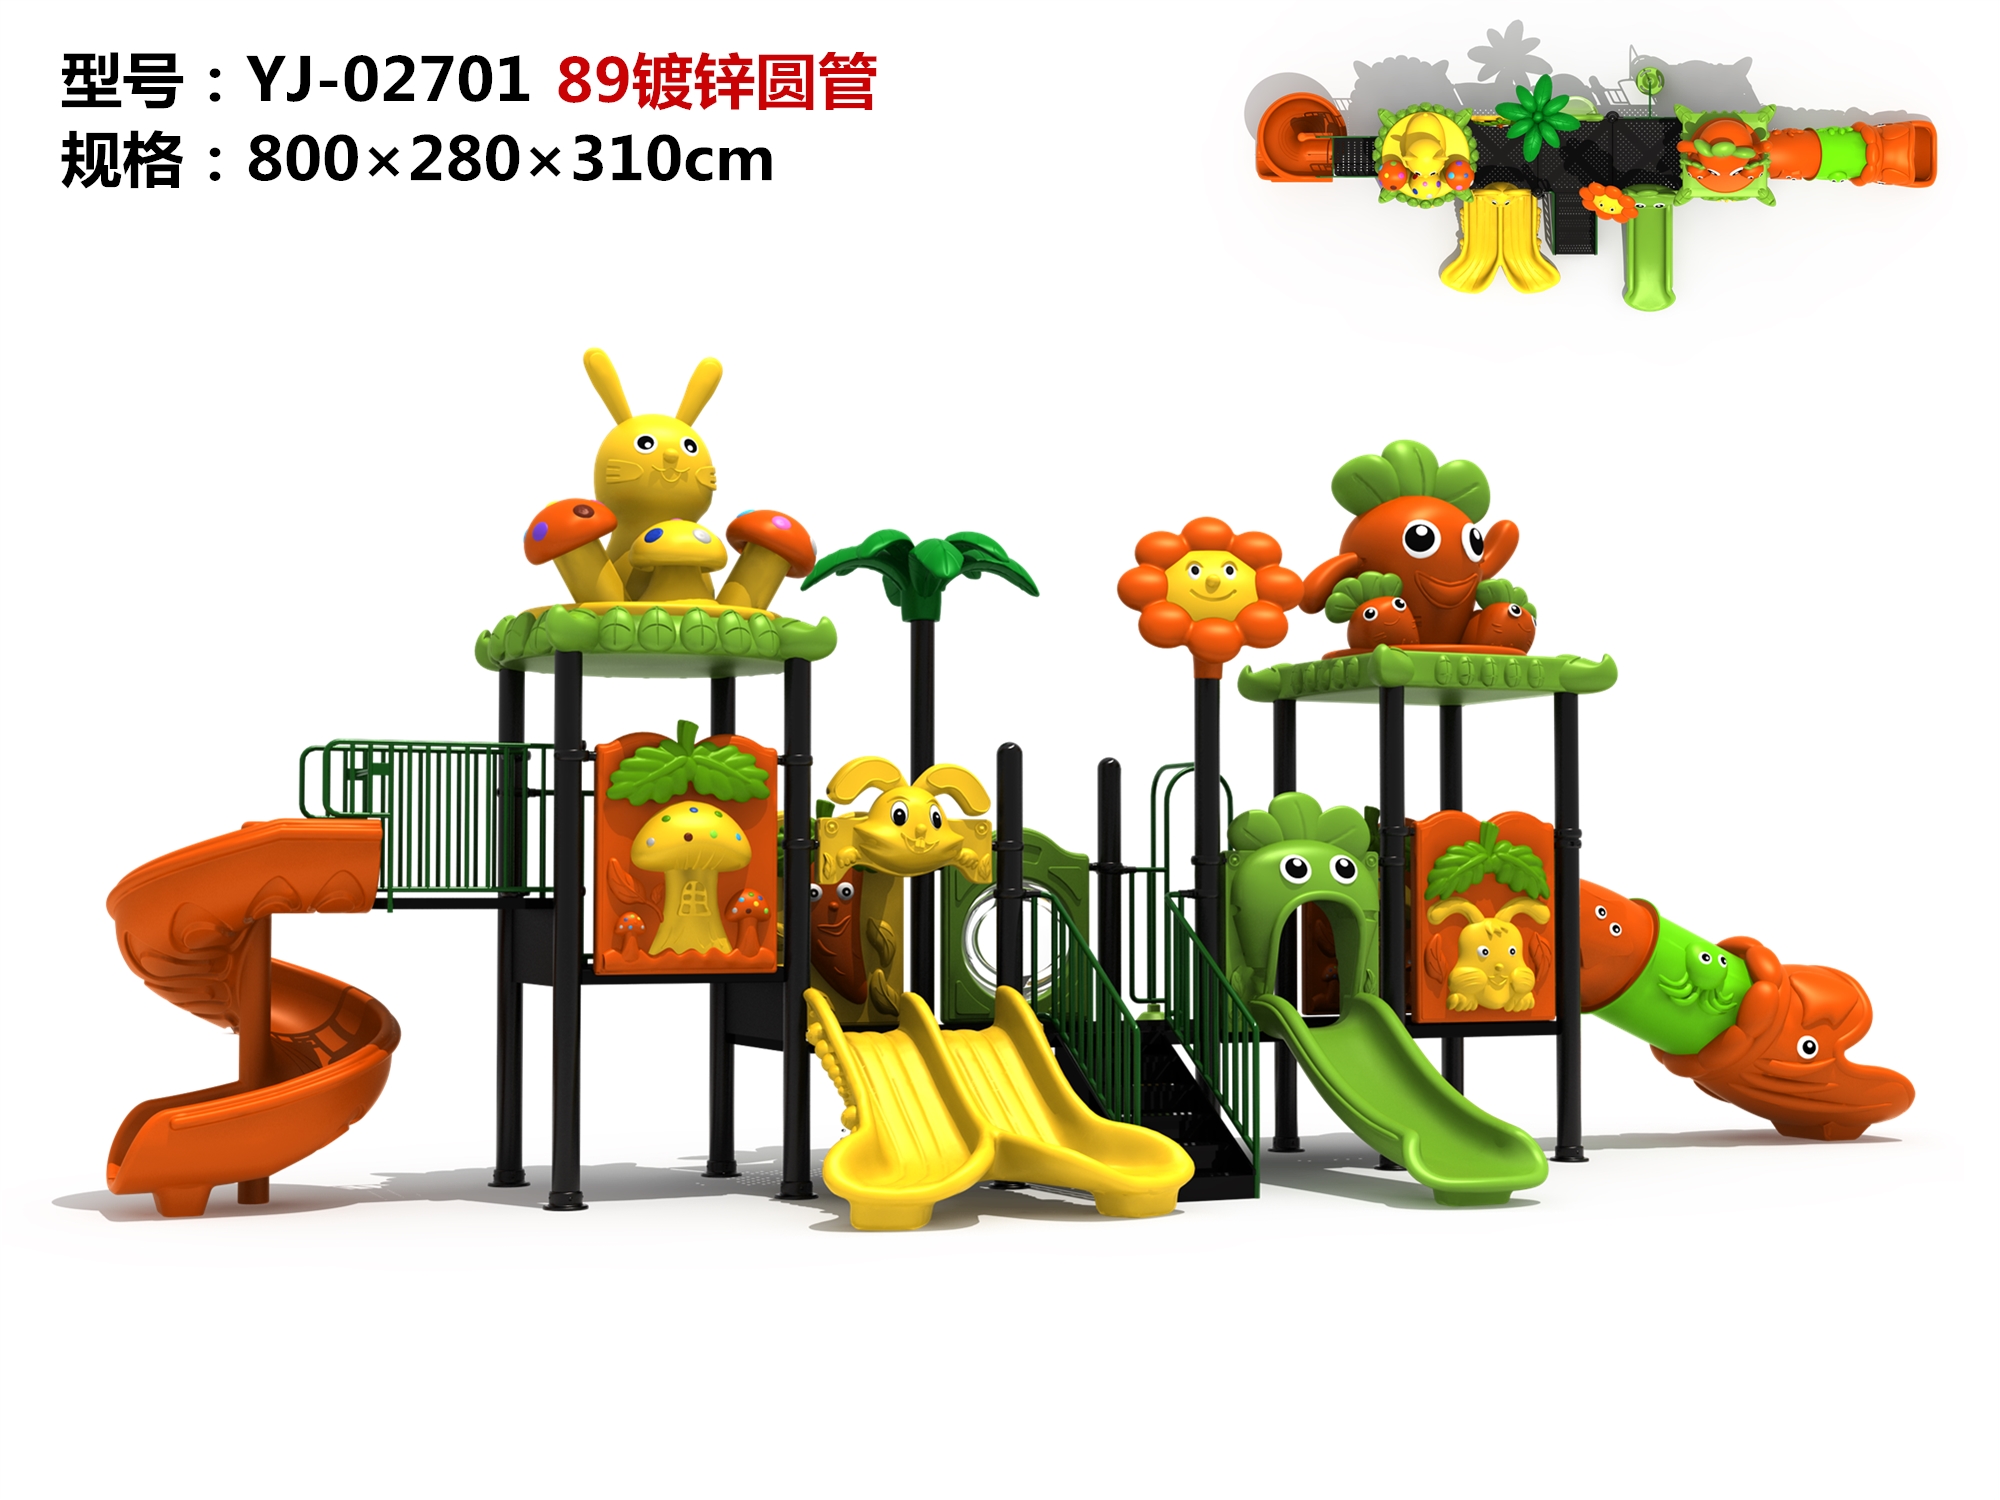 OL-MH02701Outdoor slide toddler play equipment